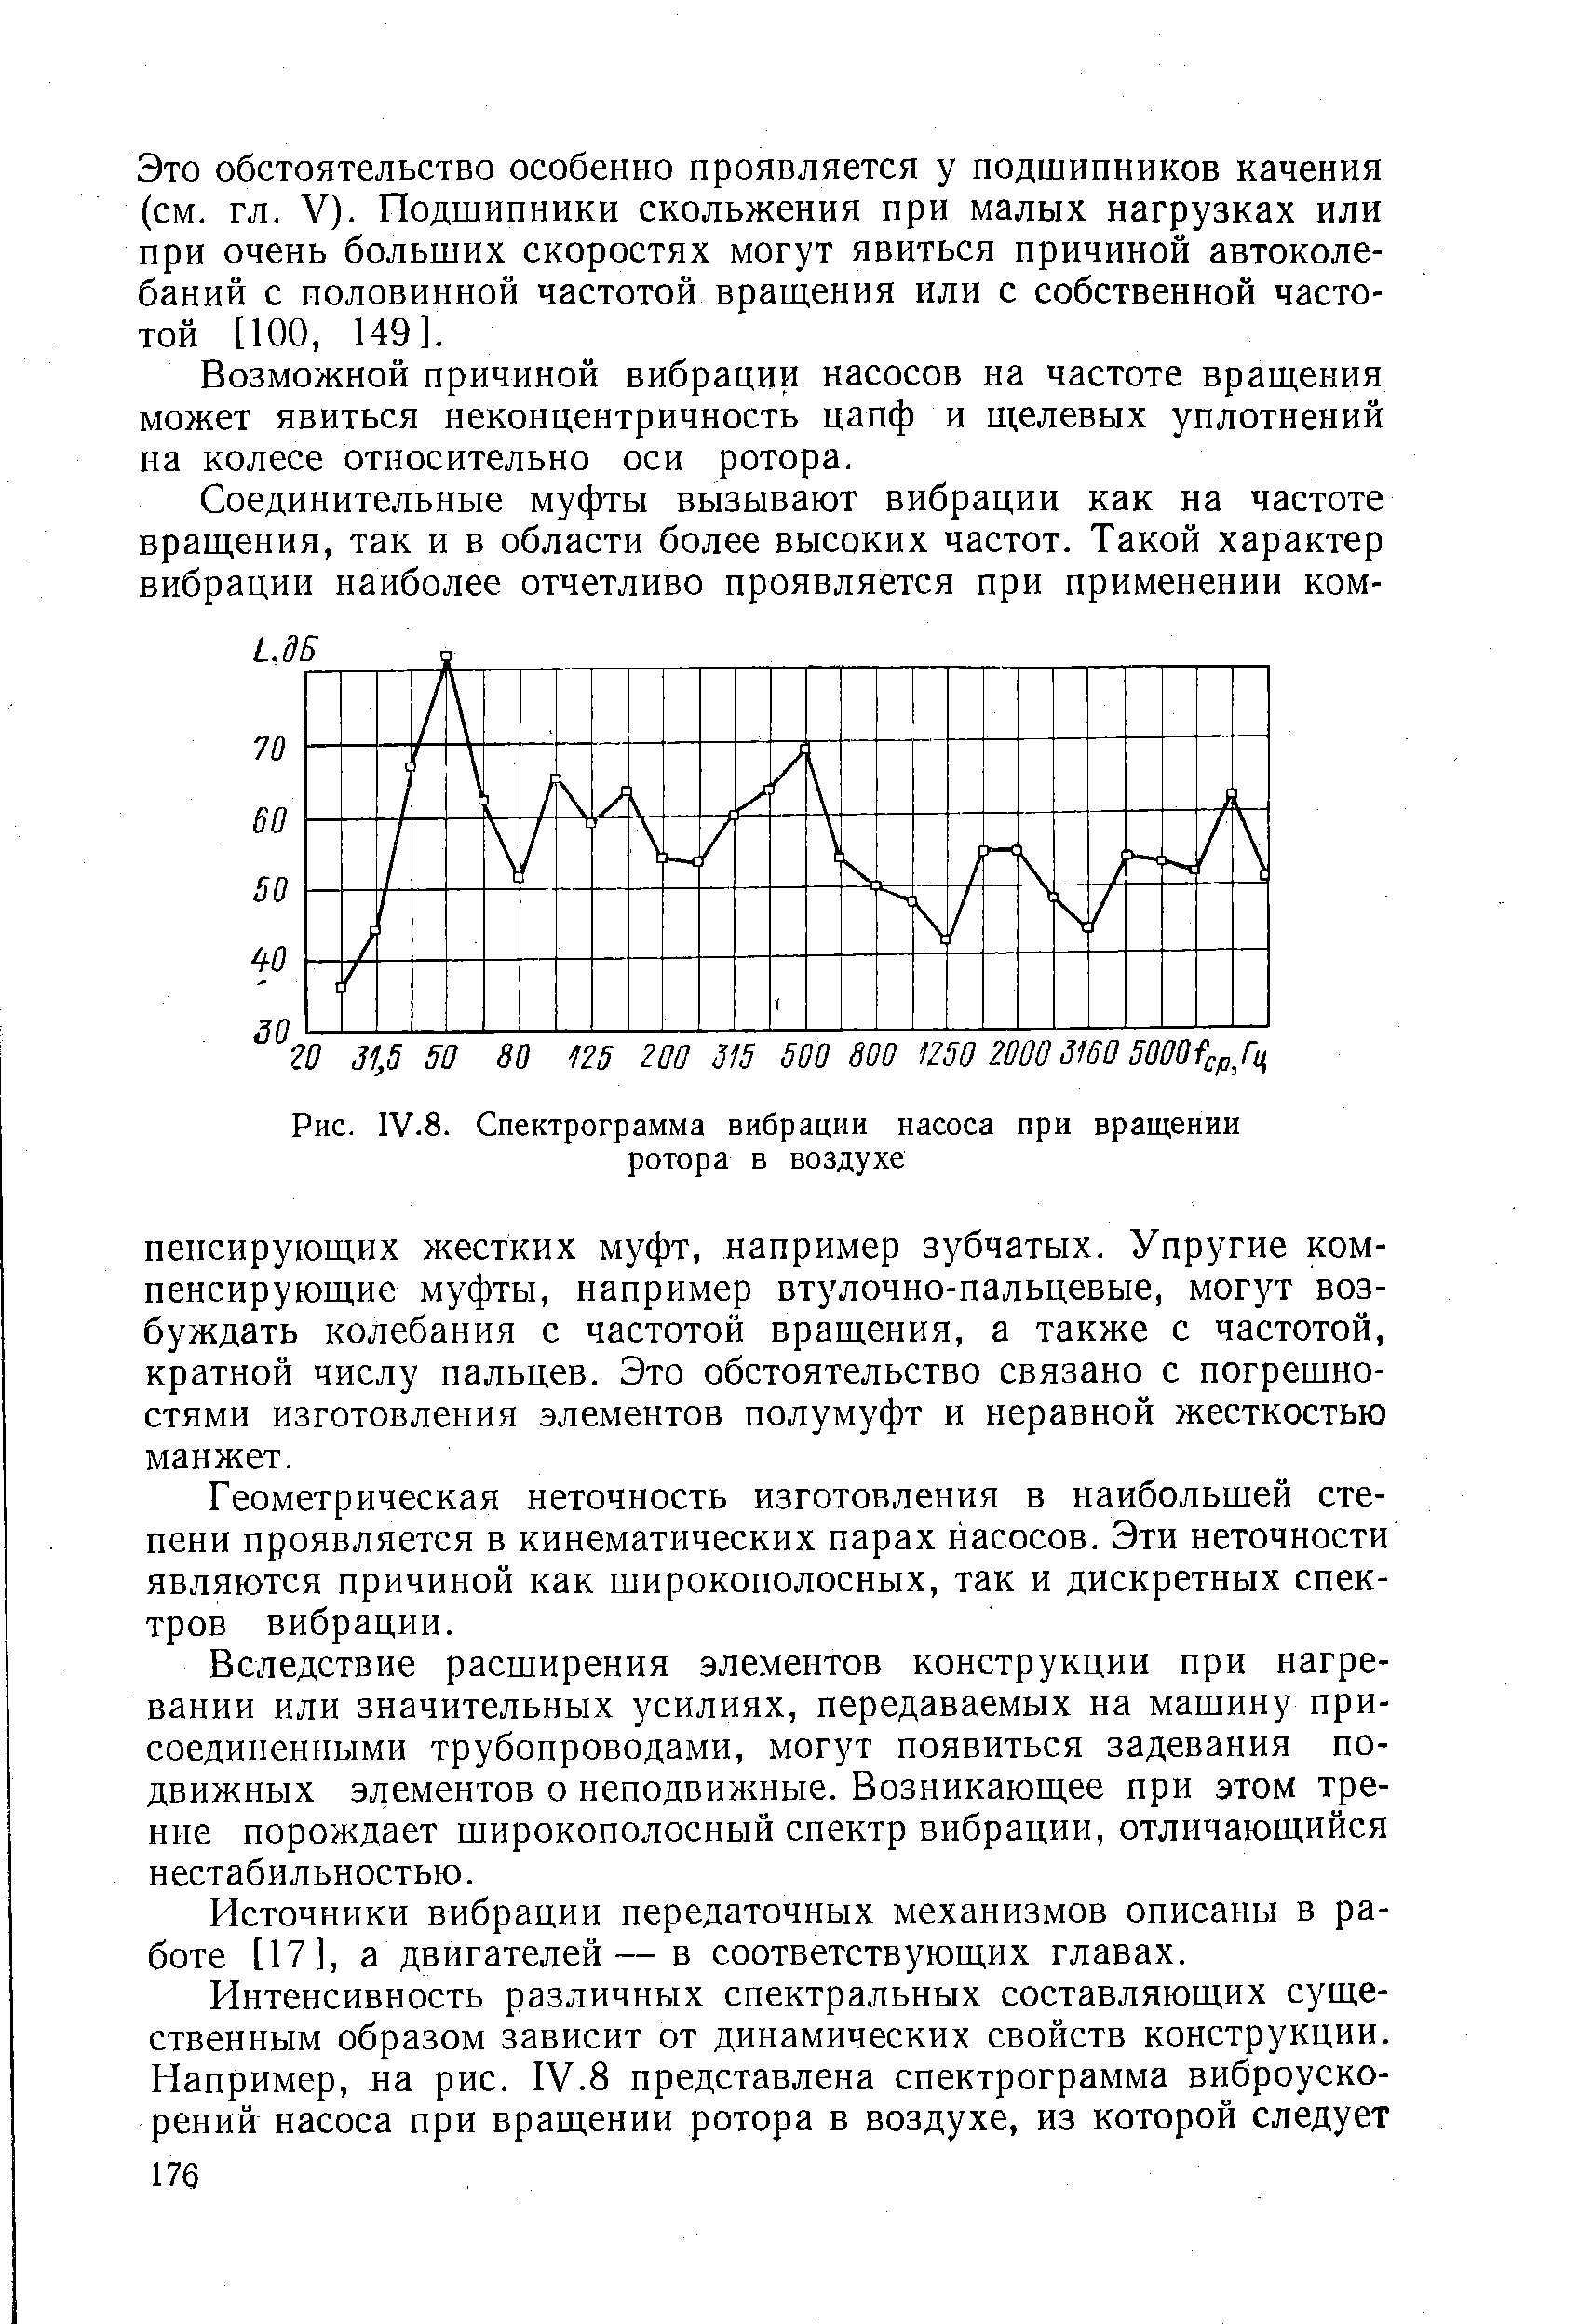 Рис. IV.8. Спектрограмма вибрации насоса при вращении ротора в воздухе
